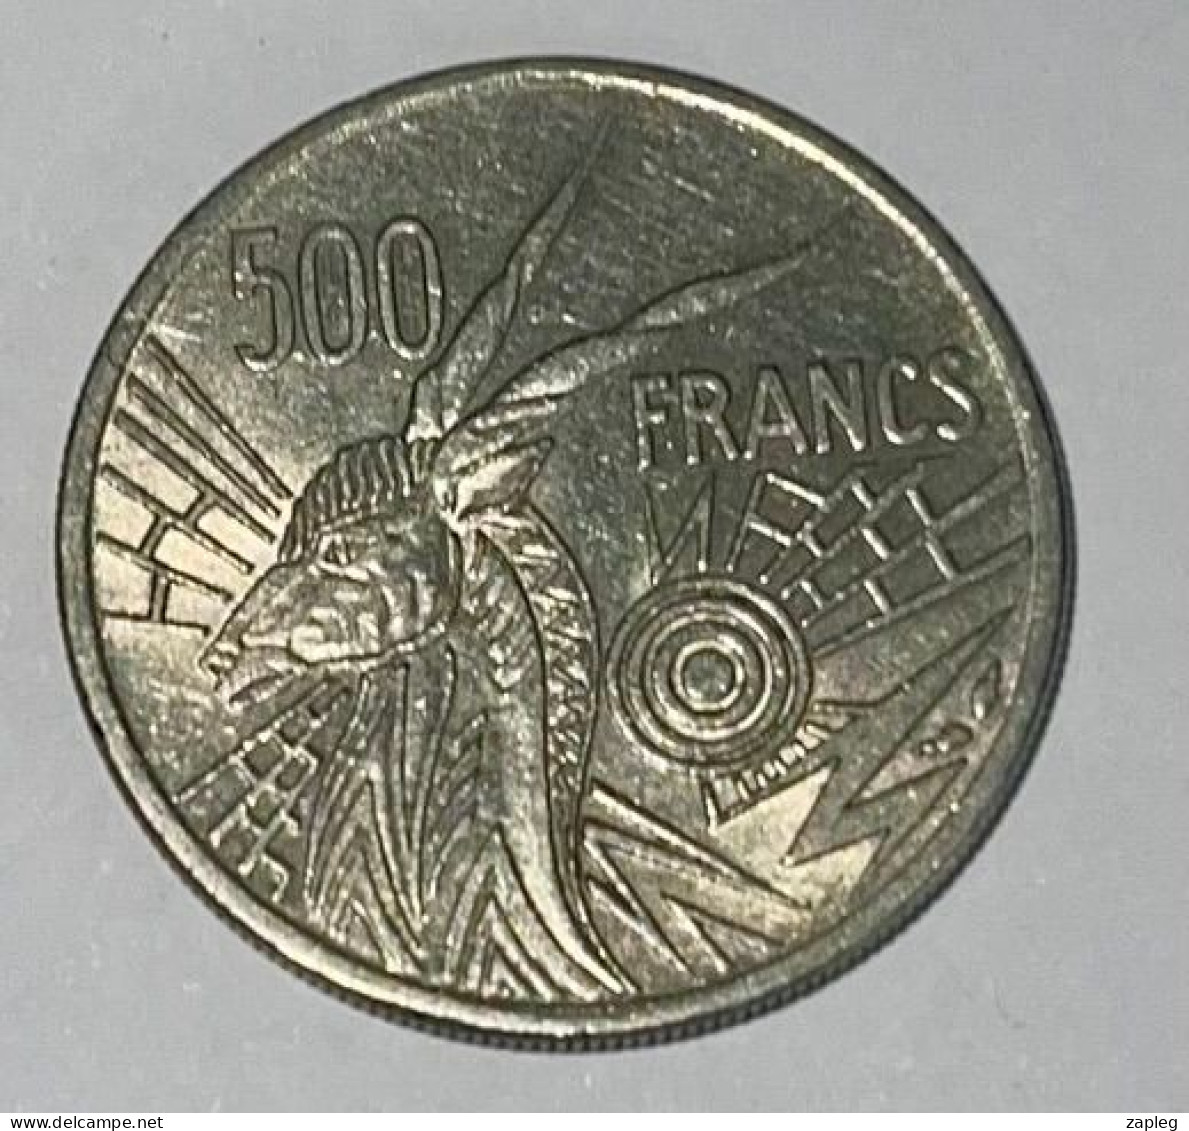 Afrique Centrale (BEAC) 500 Francs, 1976 - Cameroun - Cameroun